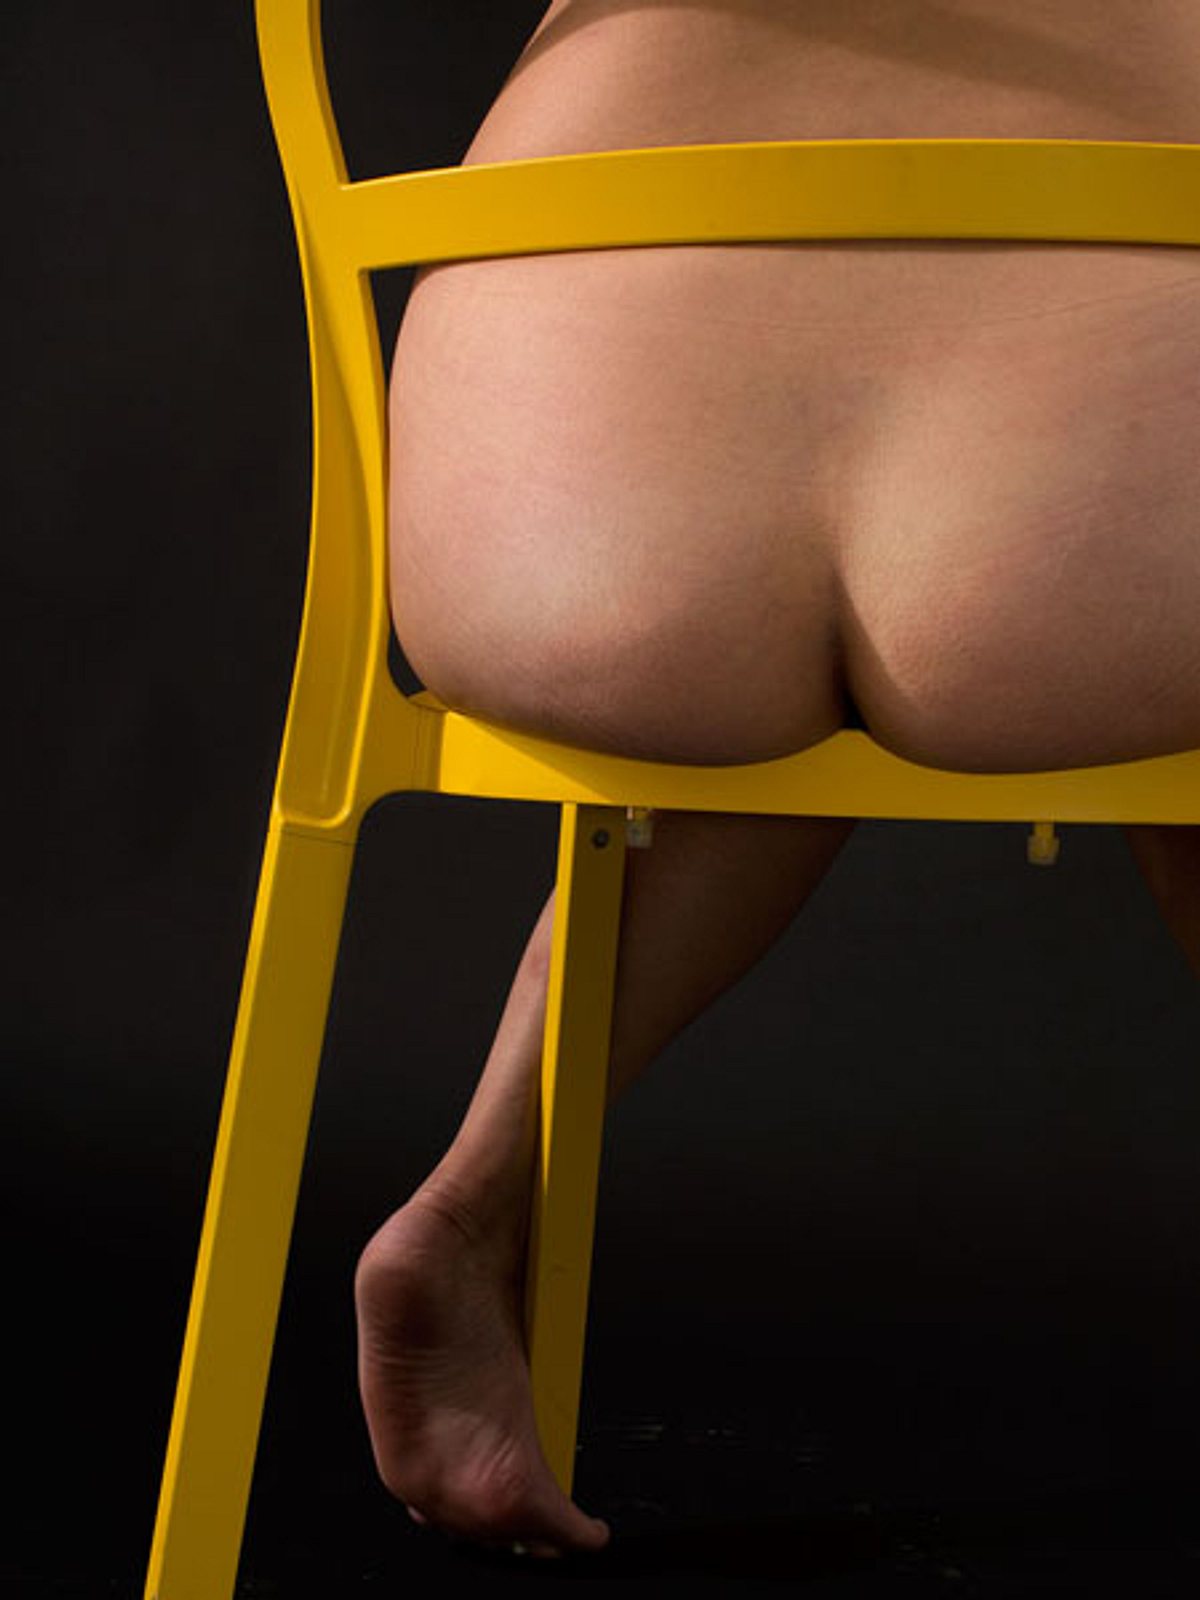 30 bilder von unretuschierten hintern gelber stuhl